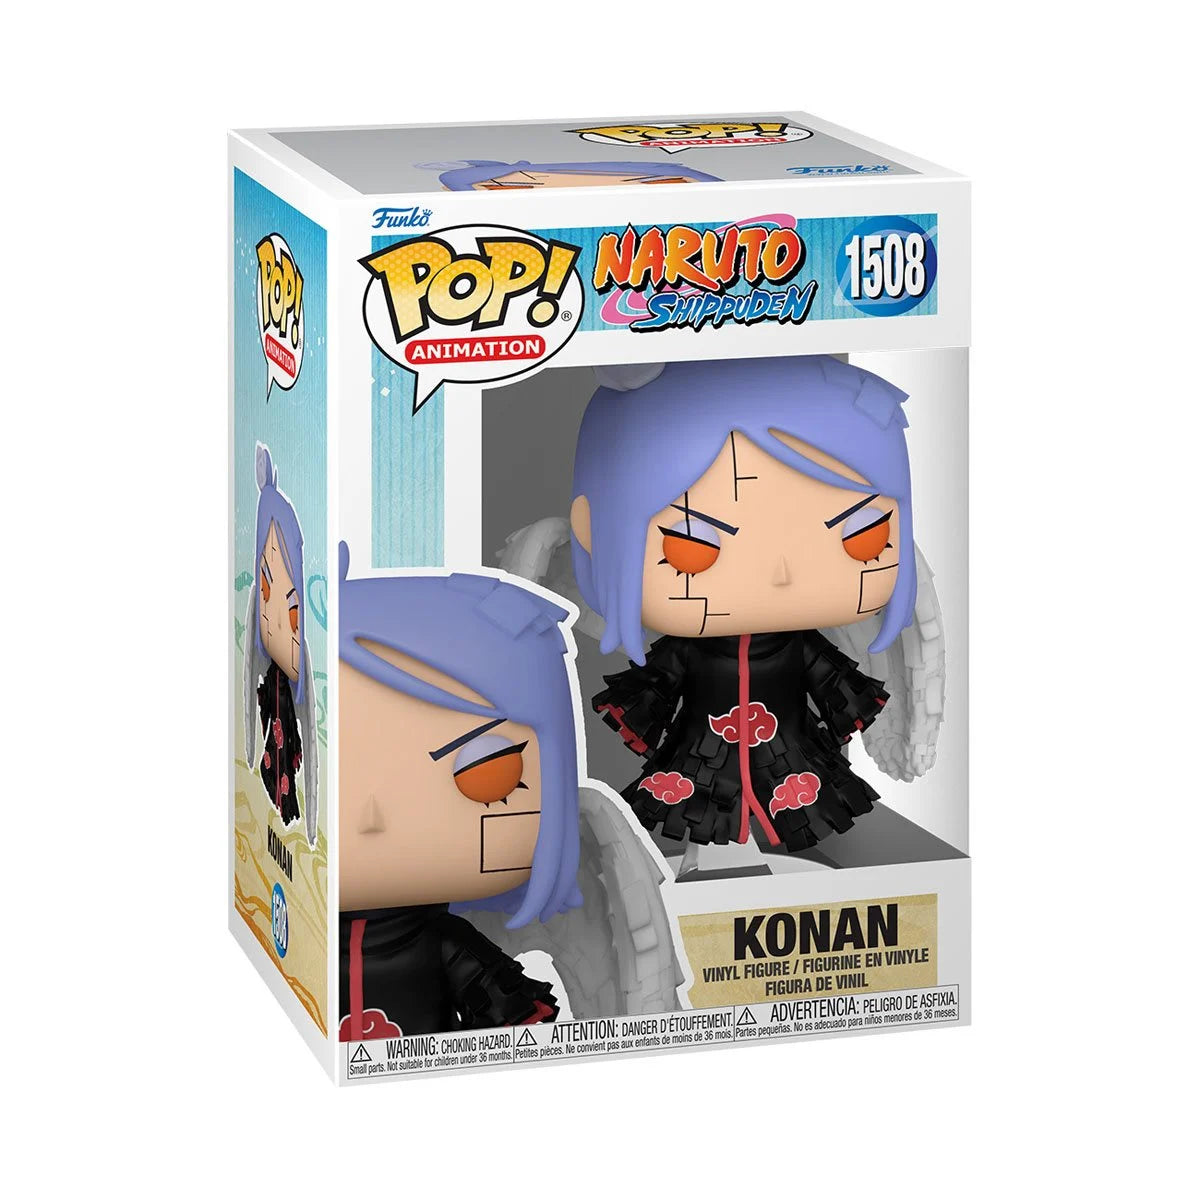 Naruto: Shippuden Konan Funko Pop!